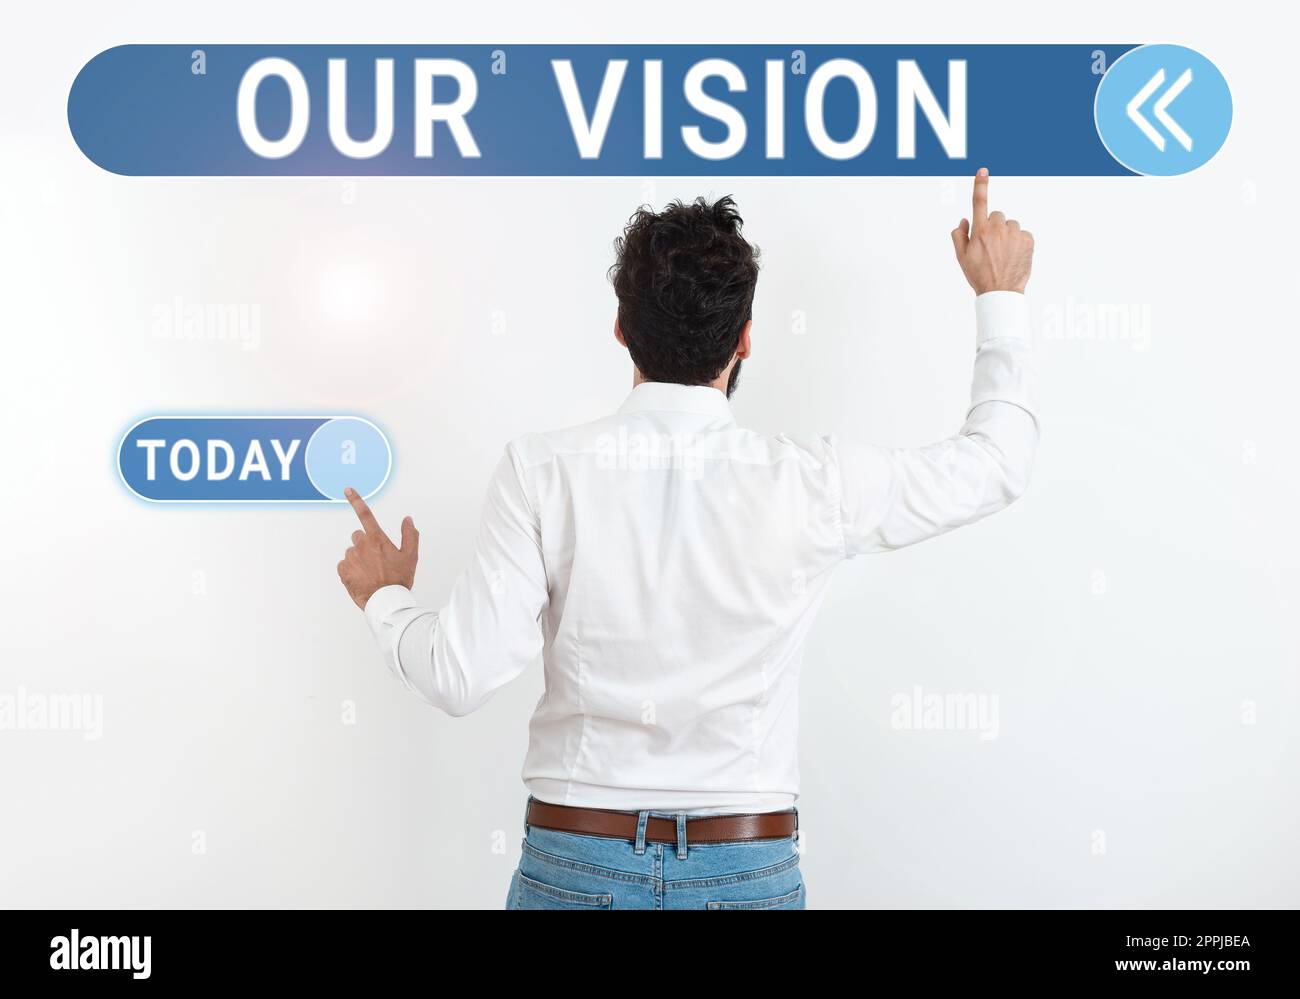 Konzeptionelle Darstellung unserer Vision. Geschäftsplanung für die nächsten fünf bis zehn Jahre zu erreichende Unternehmensziele Stockfoto